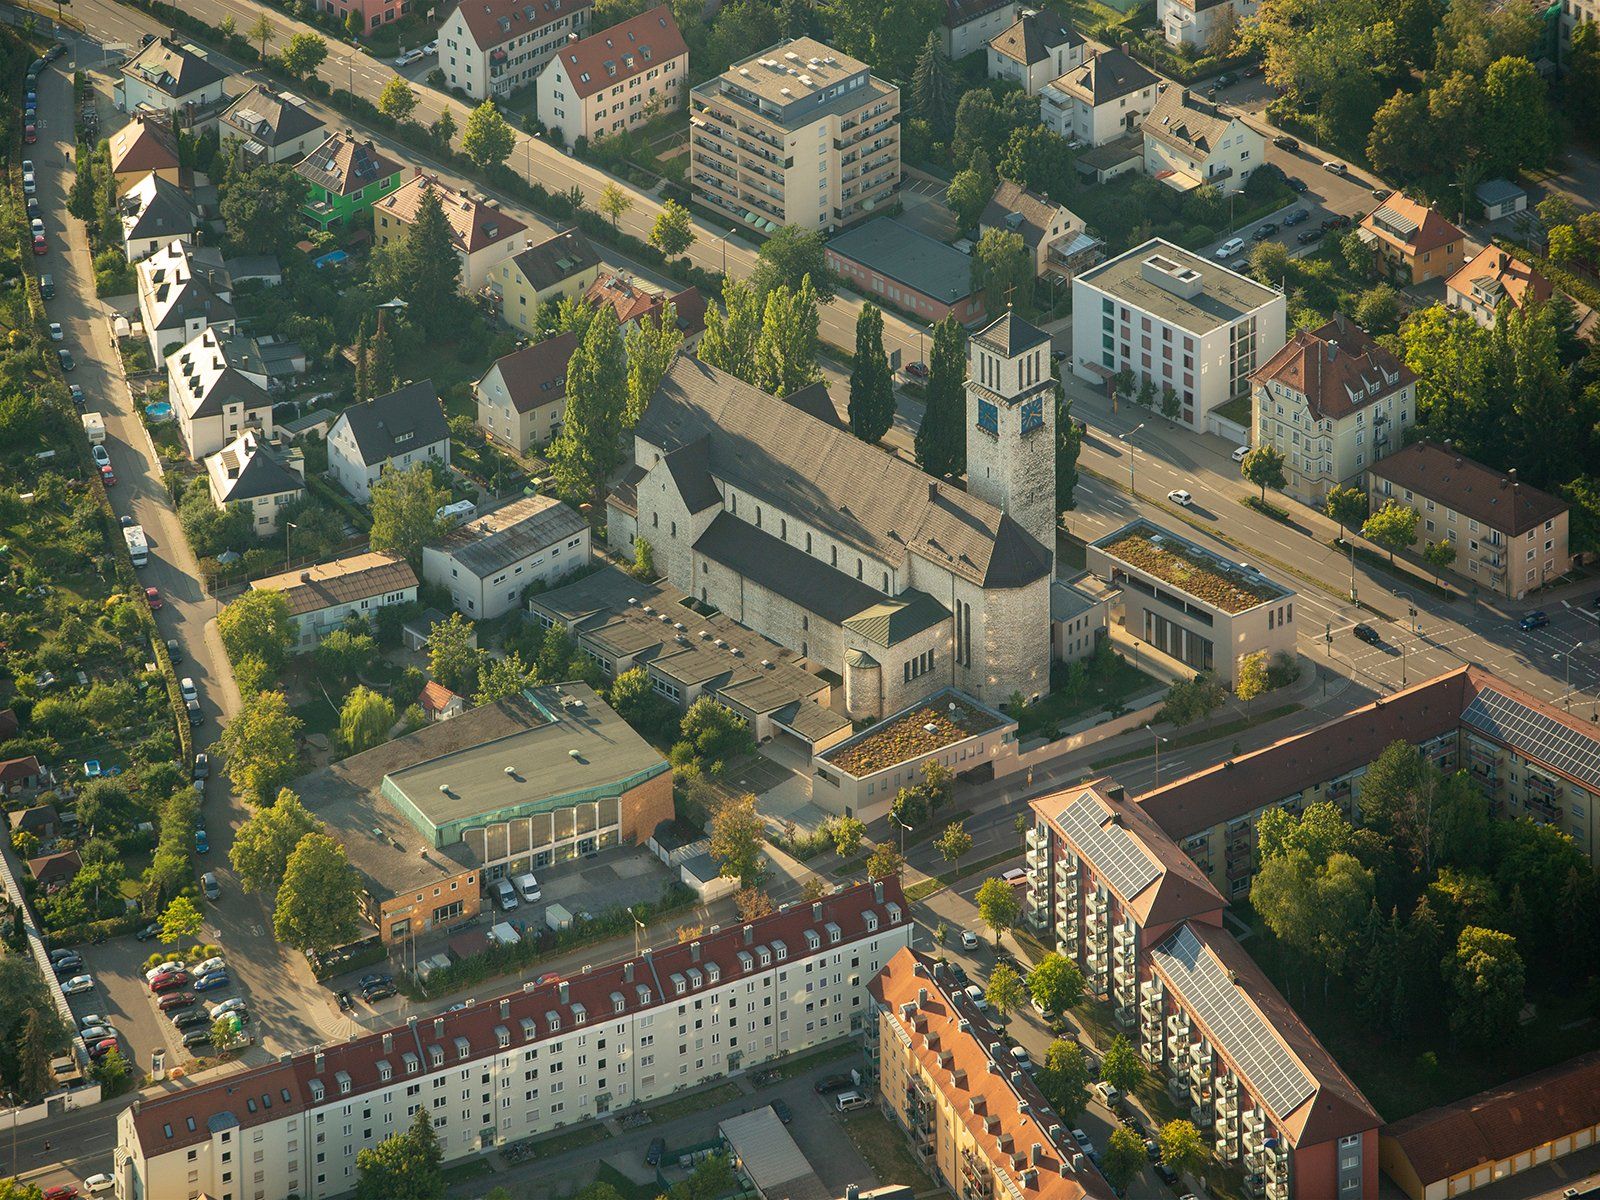 Immobilien Visualisierung: Vorher-Nachher-Vergleich von der Fotomontage eines Neubaus von Mehrfamilienhäusern in Regensburg.